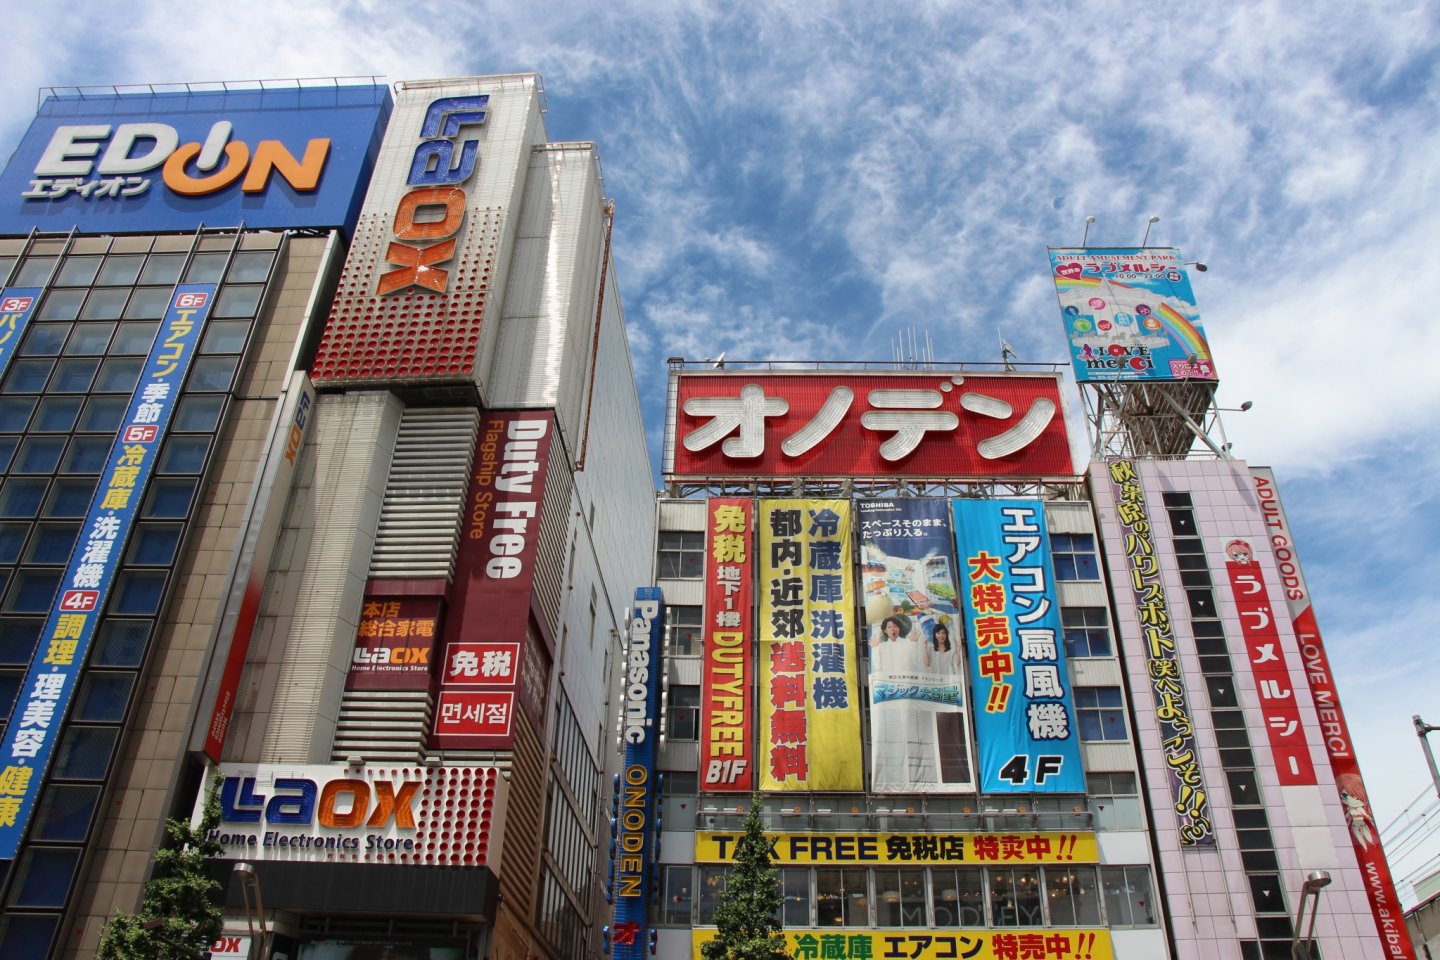 Des enseignes par milliers, dont les éclairages aux néons ont valu à Akihabara le surnom de "Electric Town"